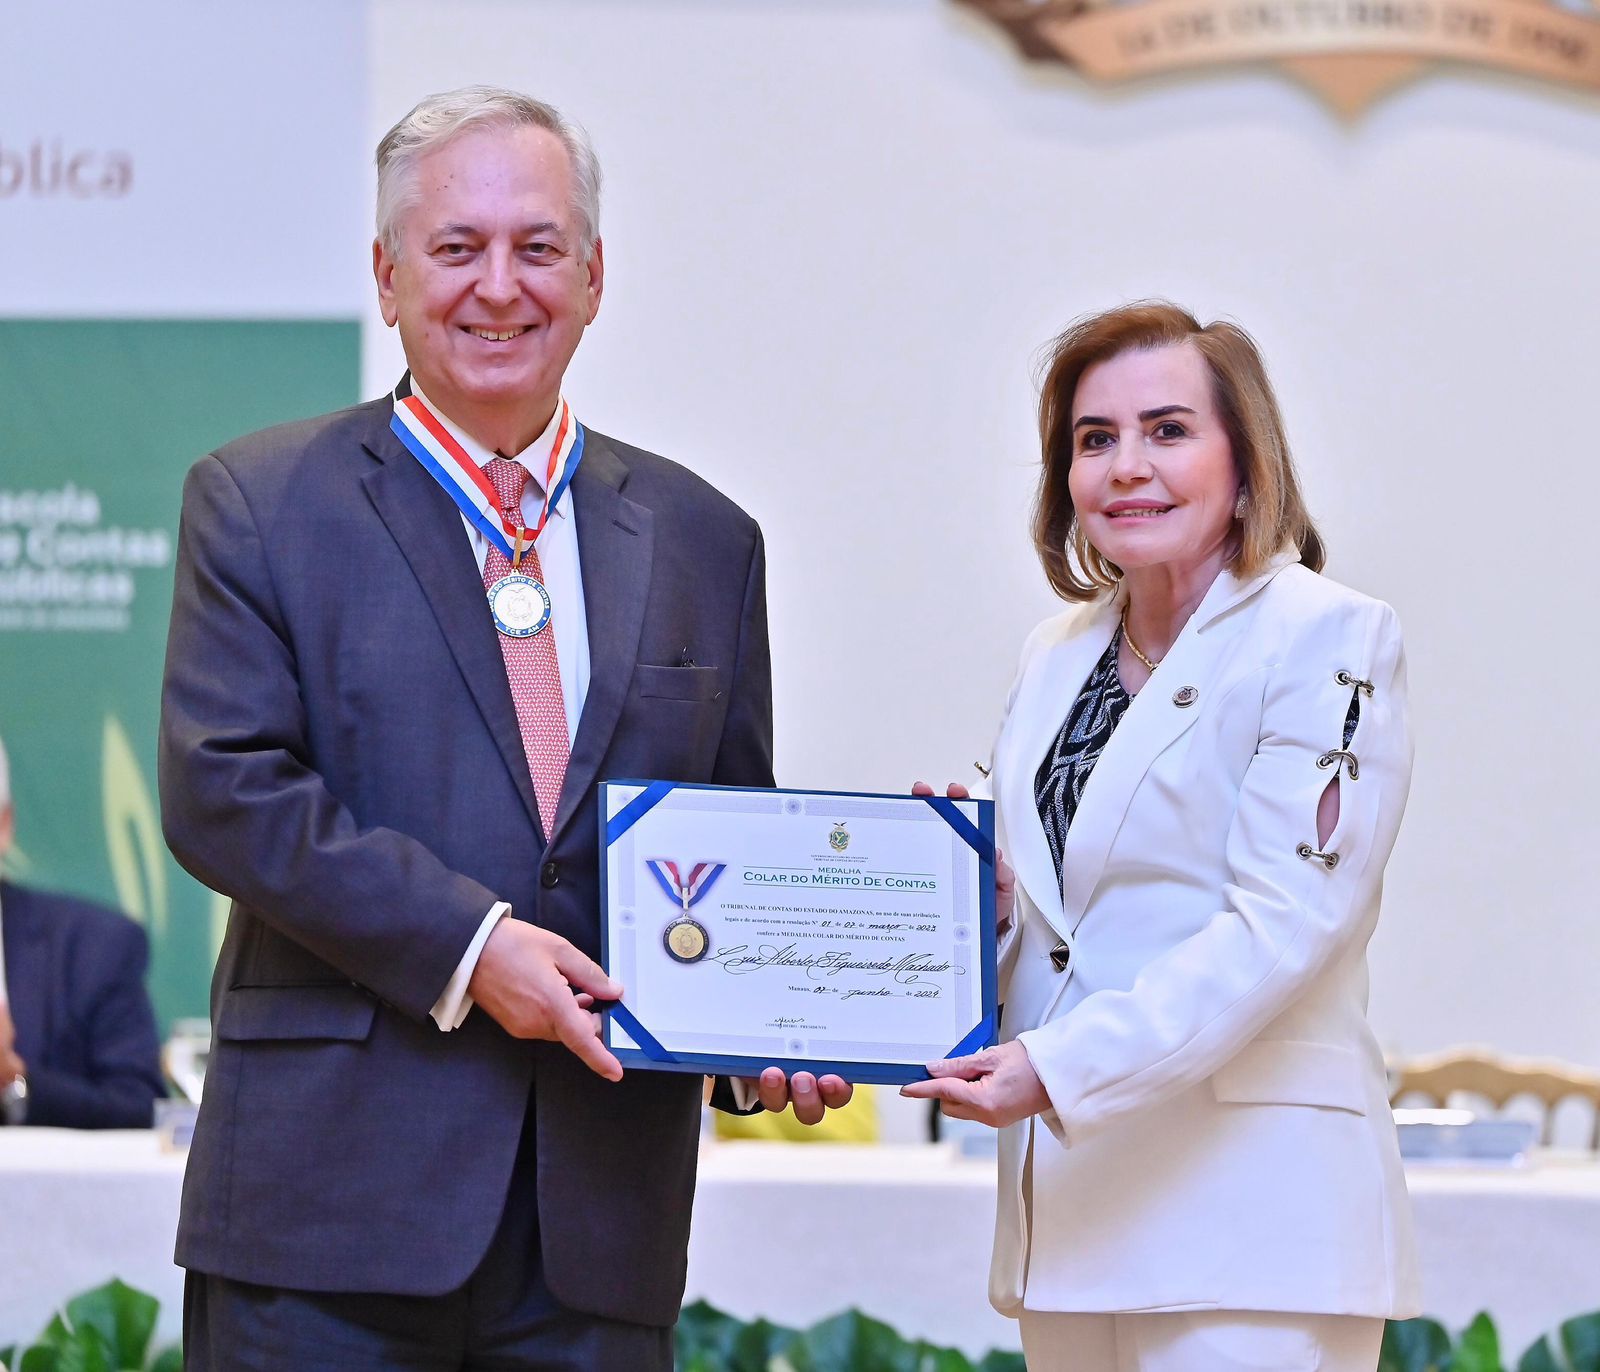 TCE-AM homenageia procurador da República e embaixador com medalha do Mérito de Contas